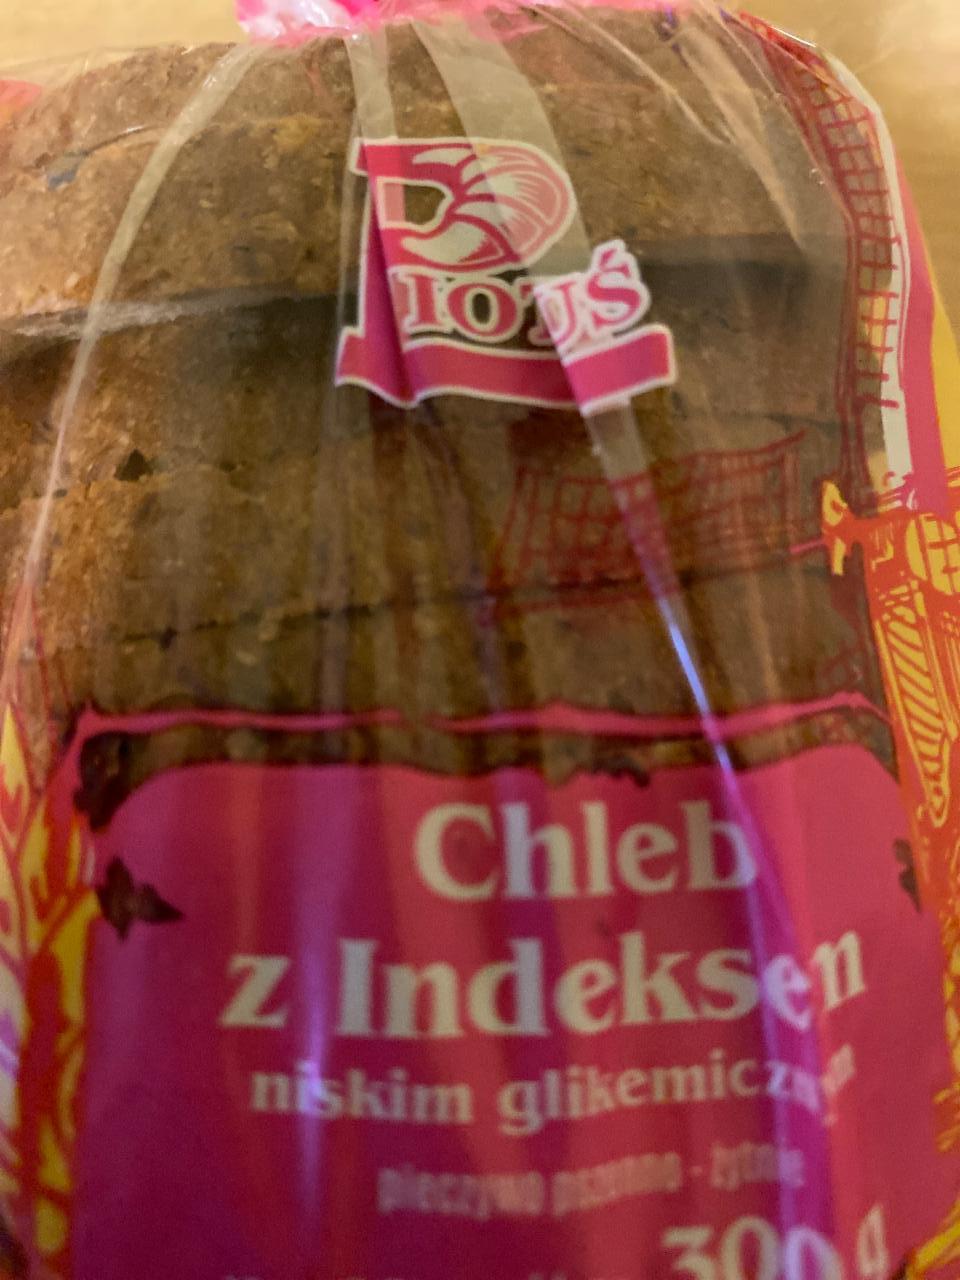 Zdjęcia - chleb z indeksem niskim glikemicznym Piotruś